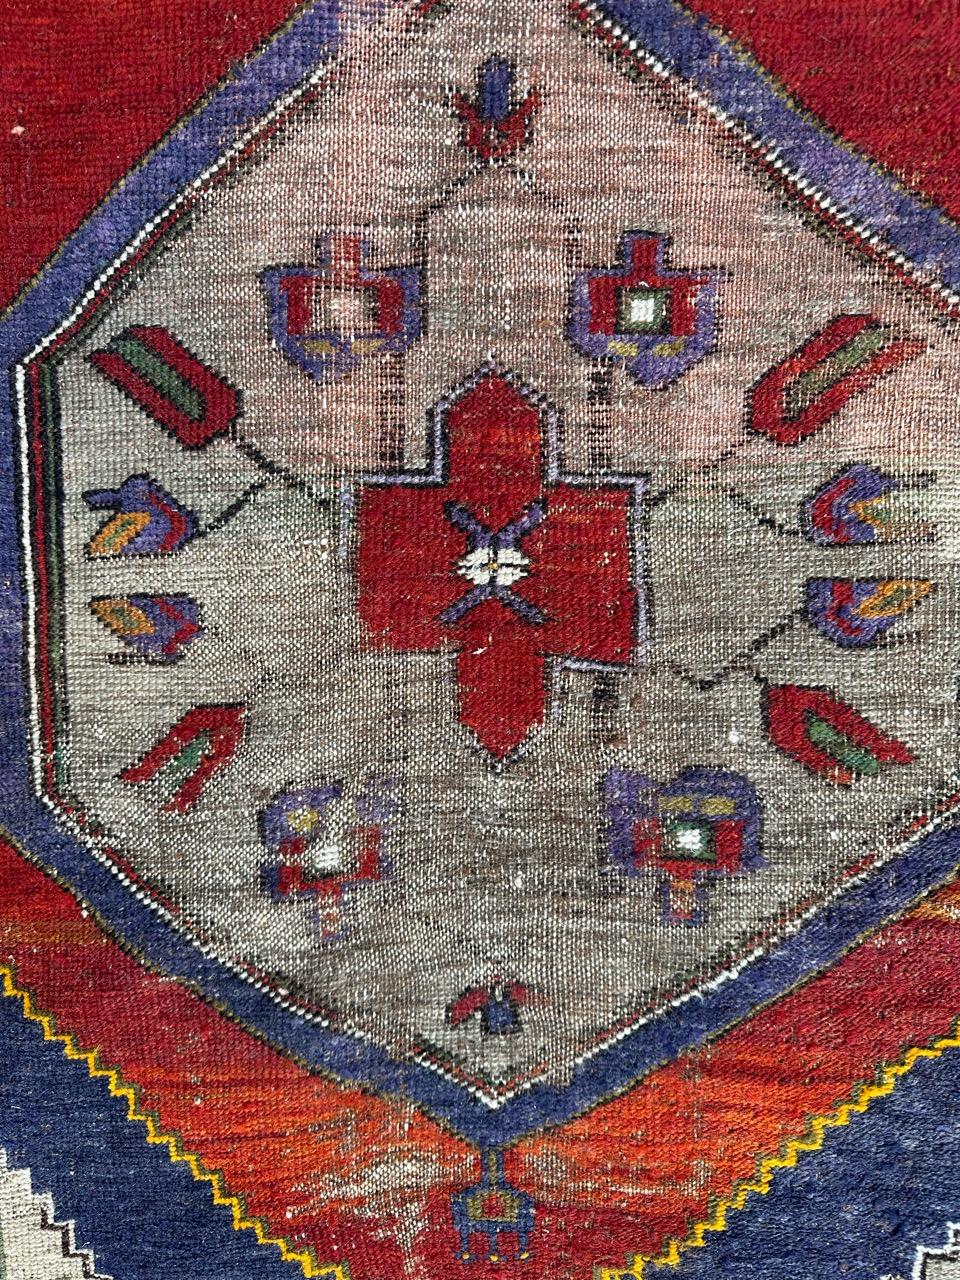 Joli tapis turc anatolien du début du 20e siècle avec de jolis motifs géométriques et stylisés et de belles couleurs naturelles, avec du rouge, du bleu, du violet, du vert et de l'orange. Entièrement noué à la main avec de la laine sur une base de